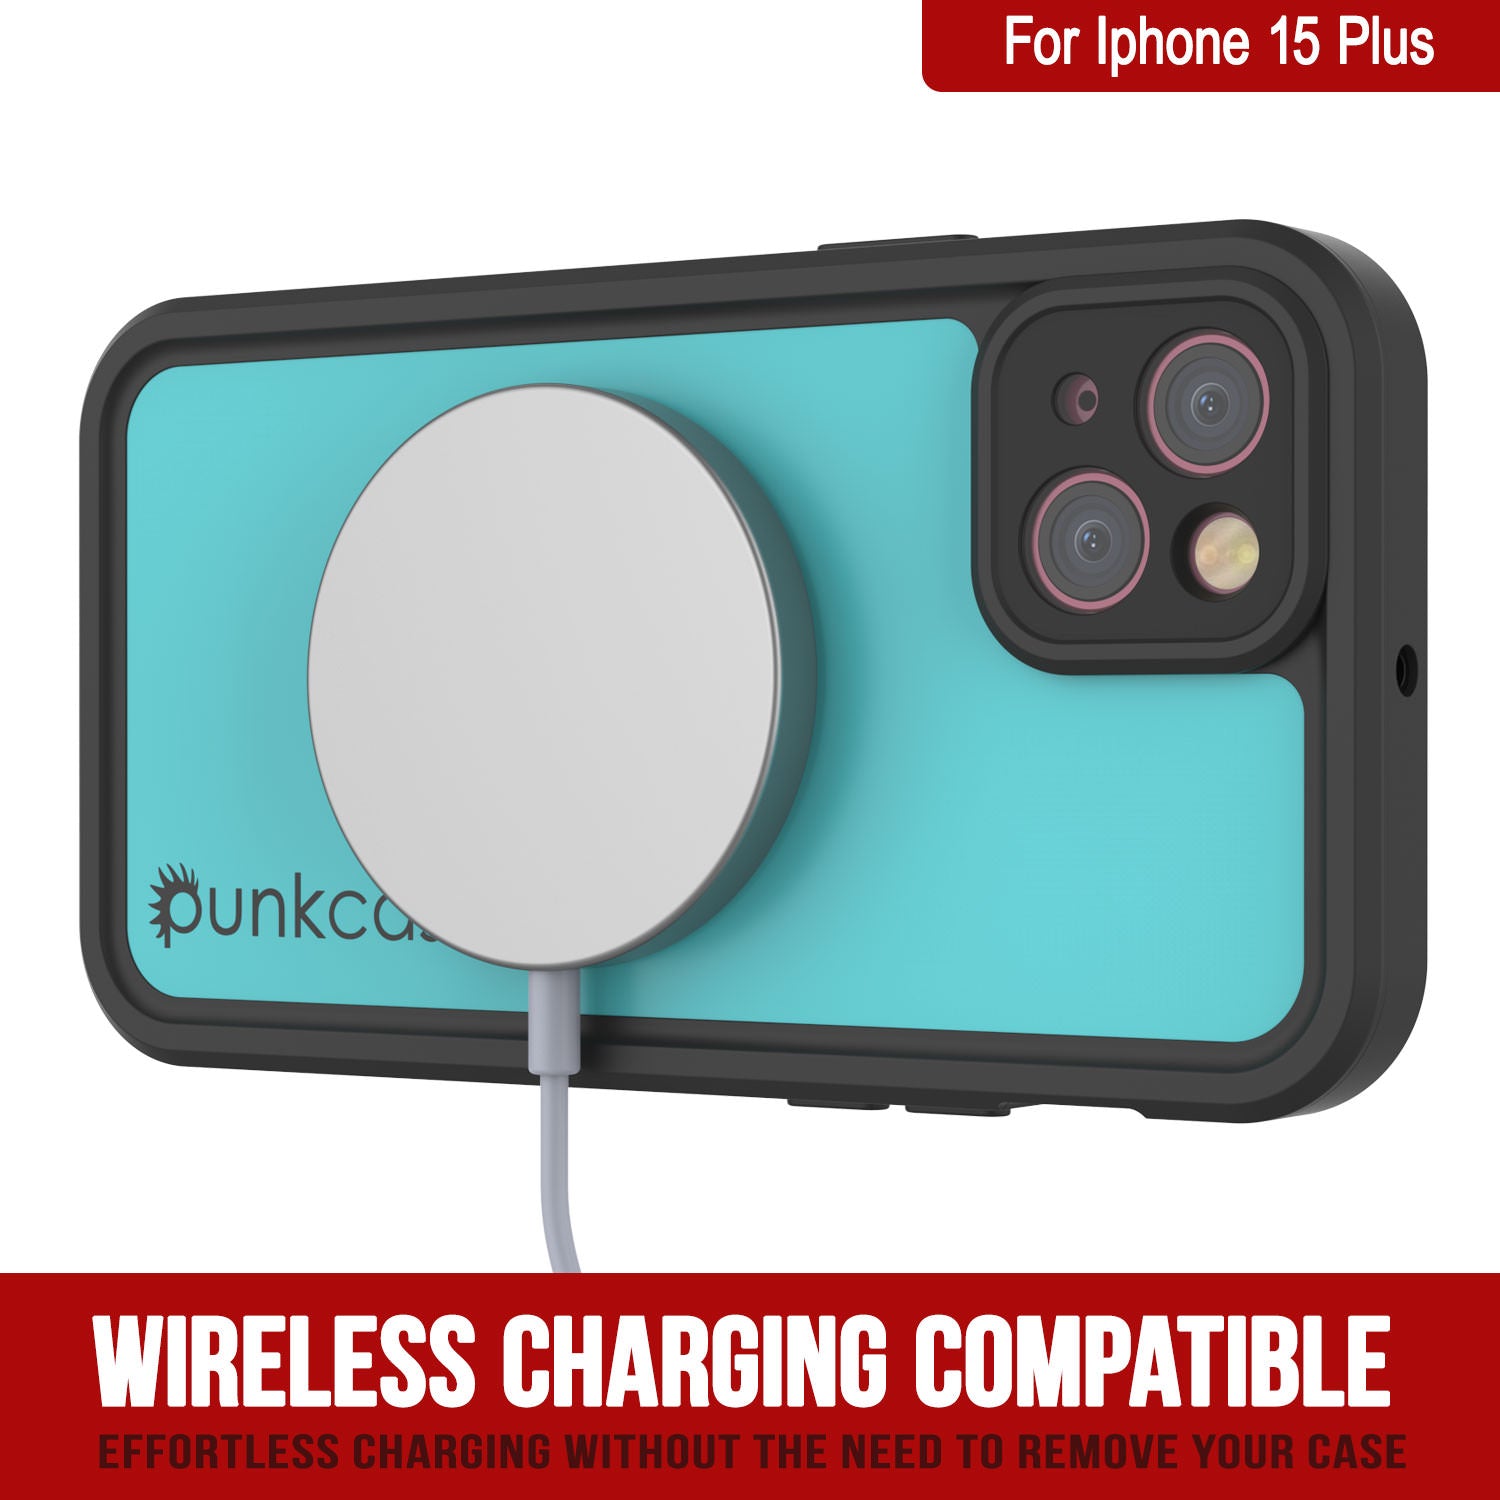 iPhone 15 Plus Waterproof IP68 Case, Punkcase [Teal] [StudStar Series] [Slim Fit]